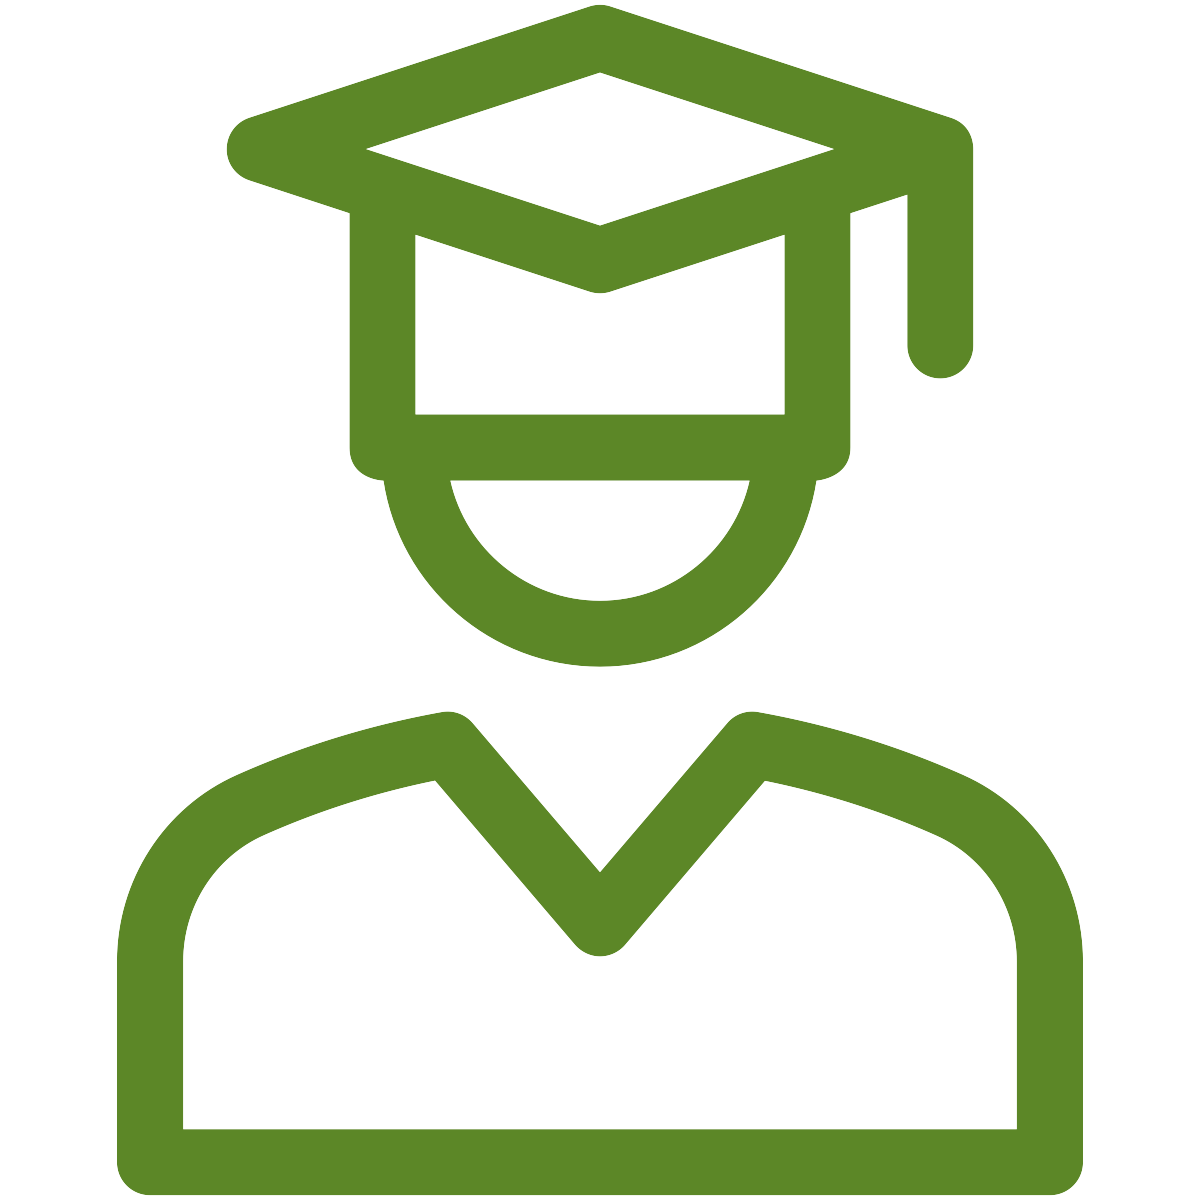 graduate icon in green